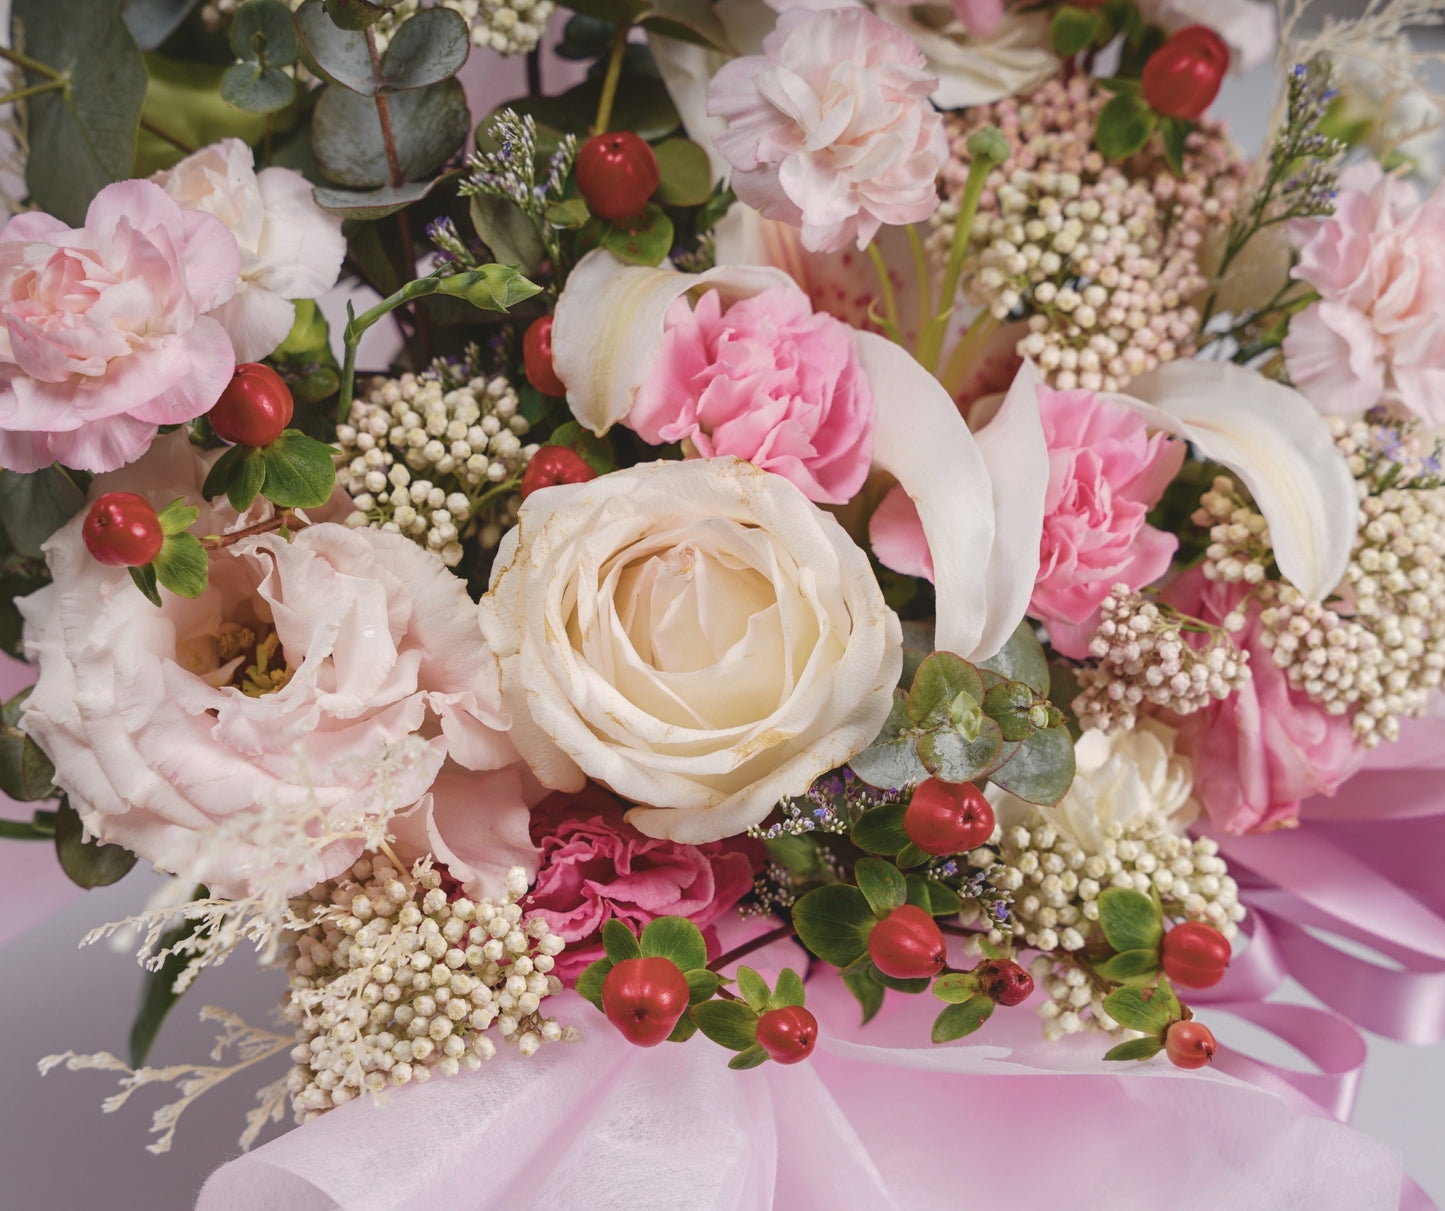 Roses & Eustoma Flower Box | Flower Box